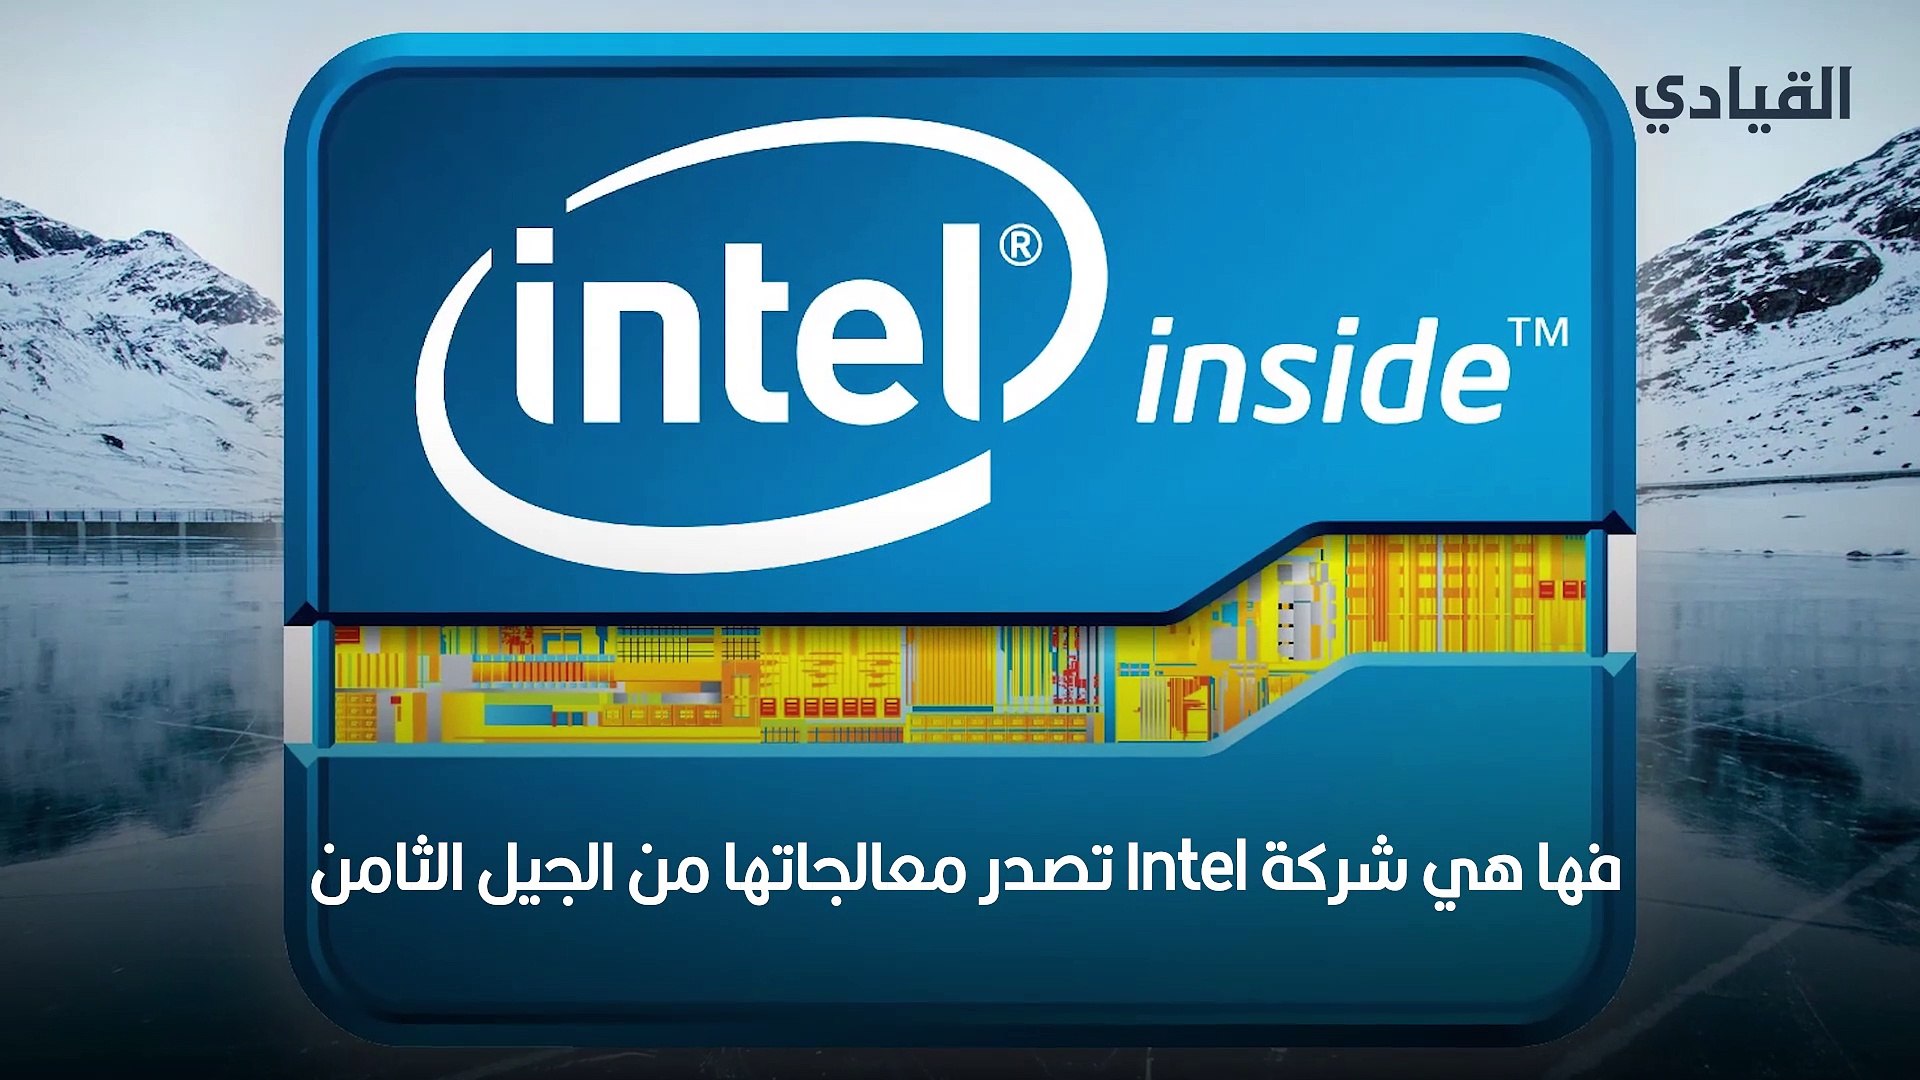 معالجات AMD Ryzen 7 2700X و Intel Core i7-8700k وجهًا لوجهٍ - فيديو  Dailymotion